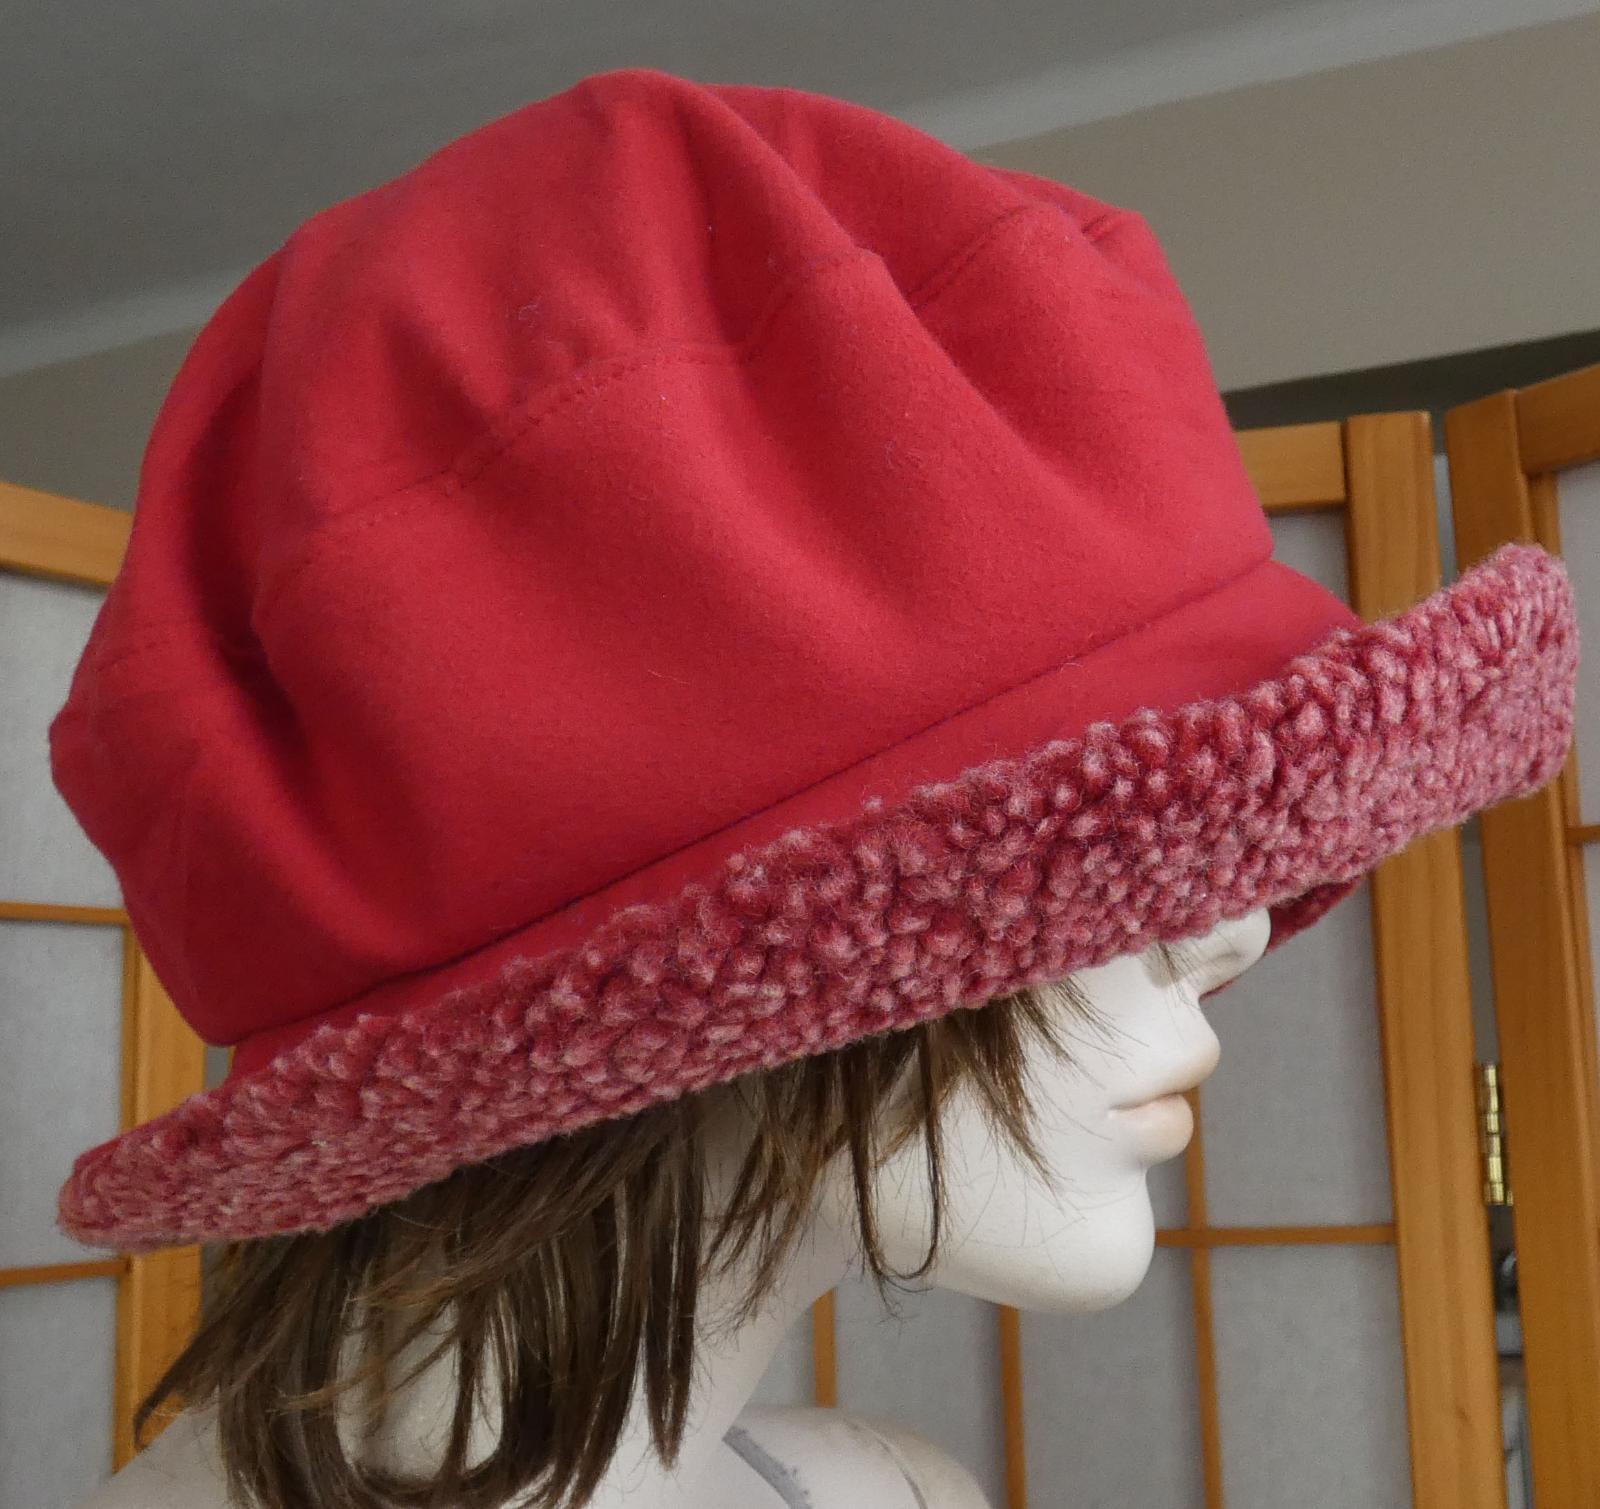 Dámska červená flísová čiapka ELAINE FRAME SCOTLAND 55cm/L ako nová - Módne doplnky